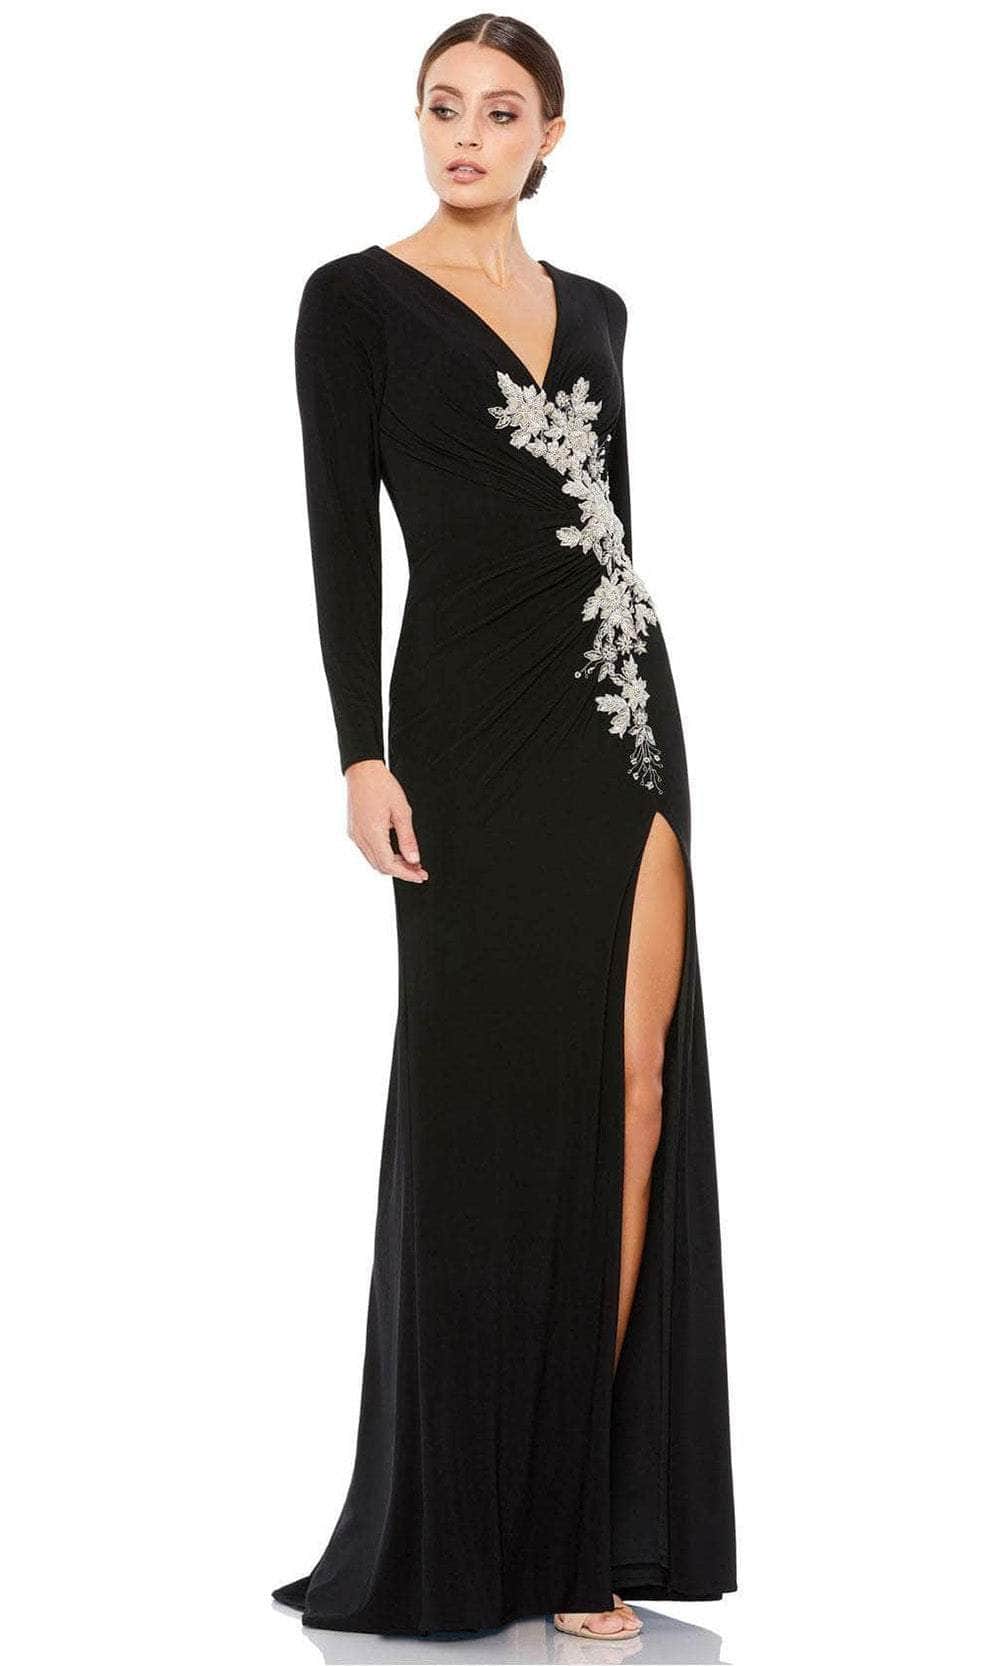 Mac Duggal 12453 - Beaded Applique Evening Dress Special Occasion Dress 2 / Black